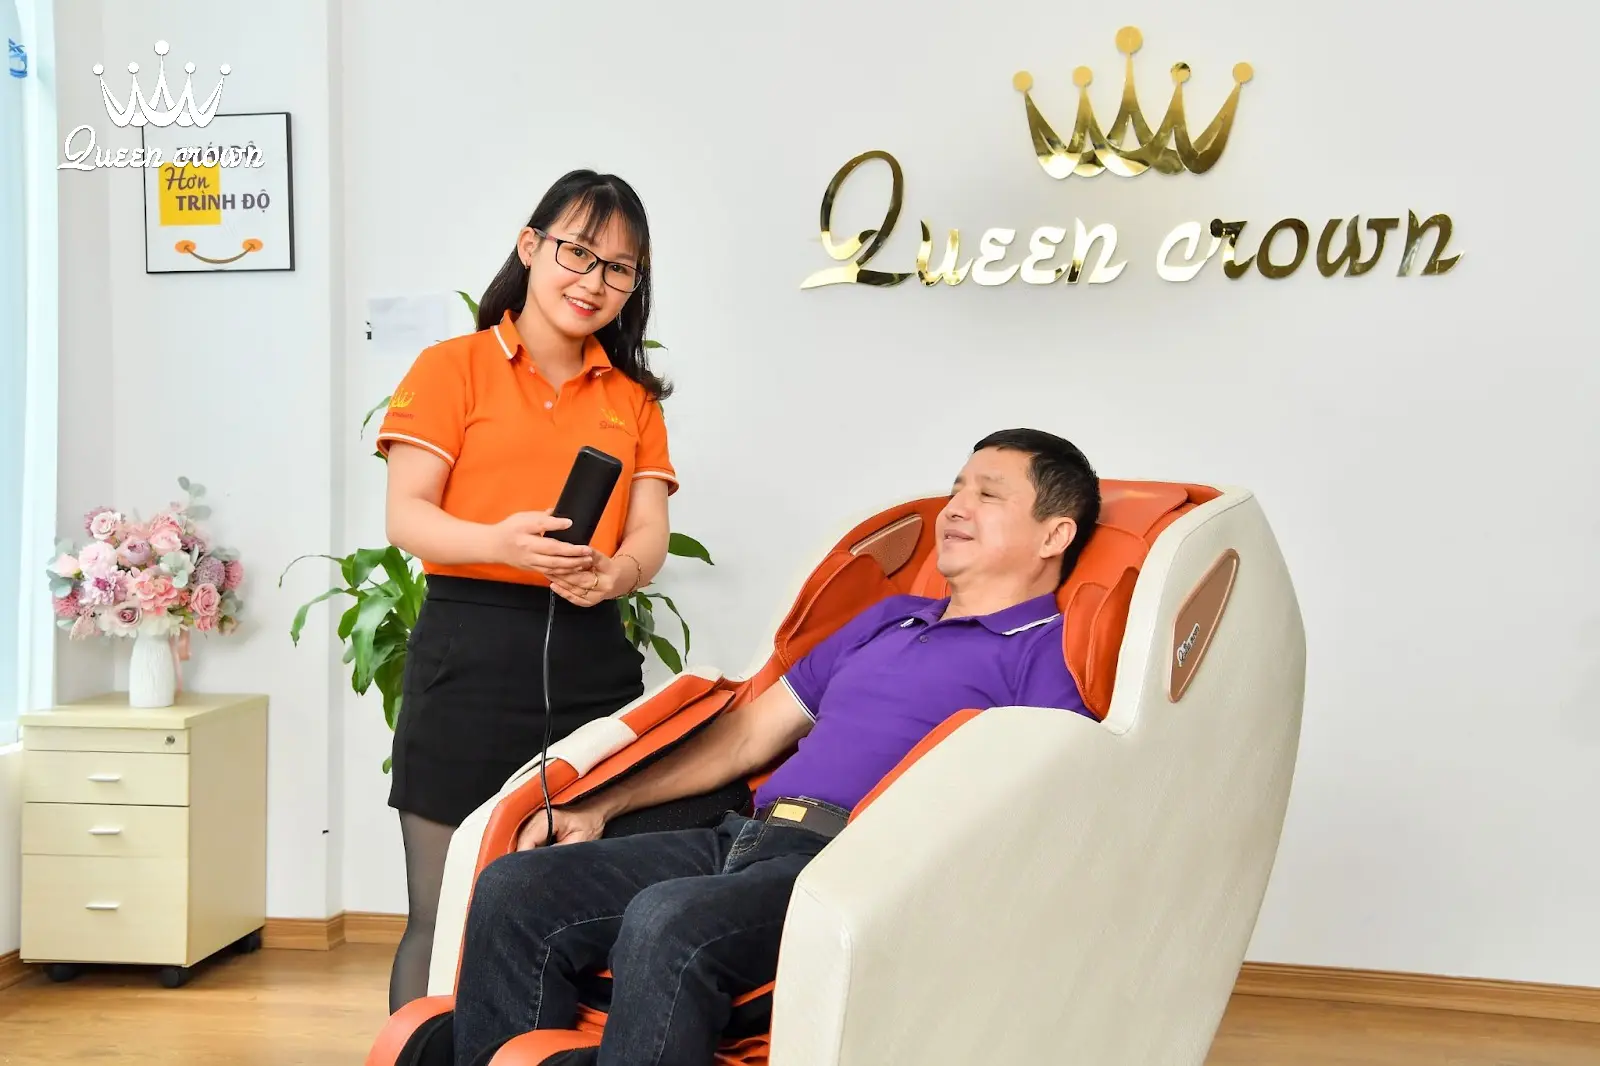 nghệ sĩ chí trung trải nghiệm ghế massage bà rịa của queen crown